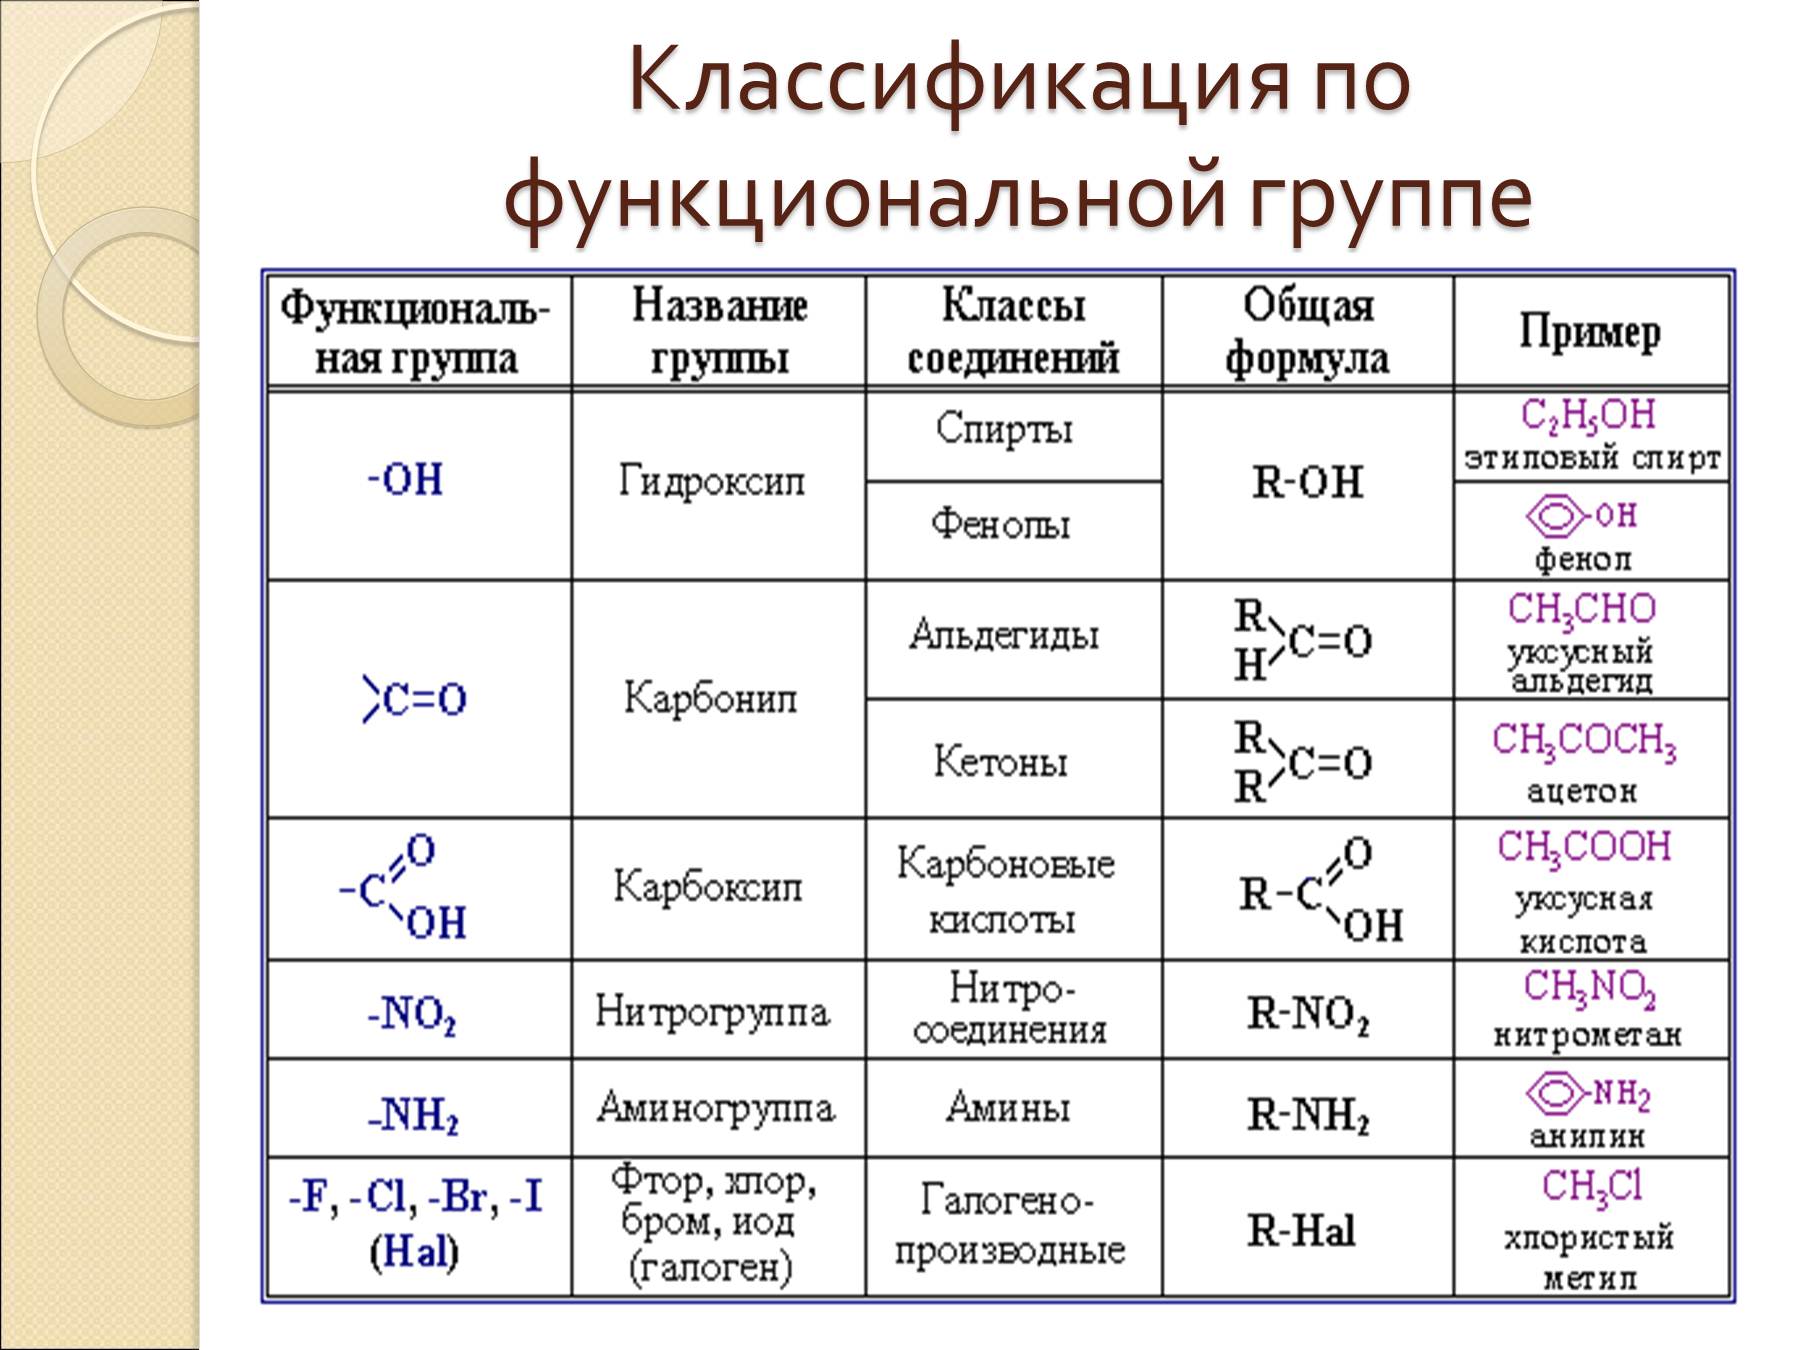 Naci класс соединений. Функциональные производные углеводородов таблица. Классификация по функциональным группам органическая химия. Основные классы химических органических соединений. Классы и группы веществ в химии органика.